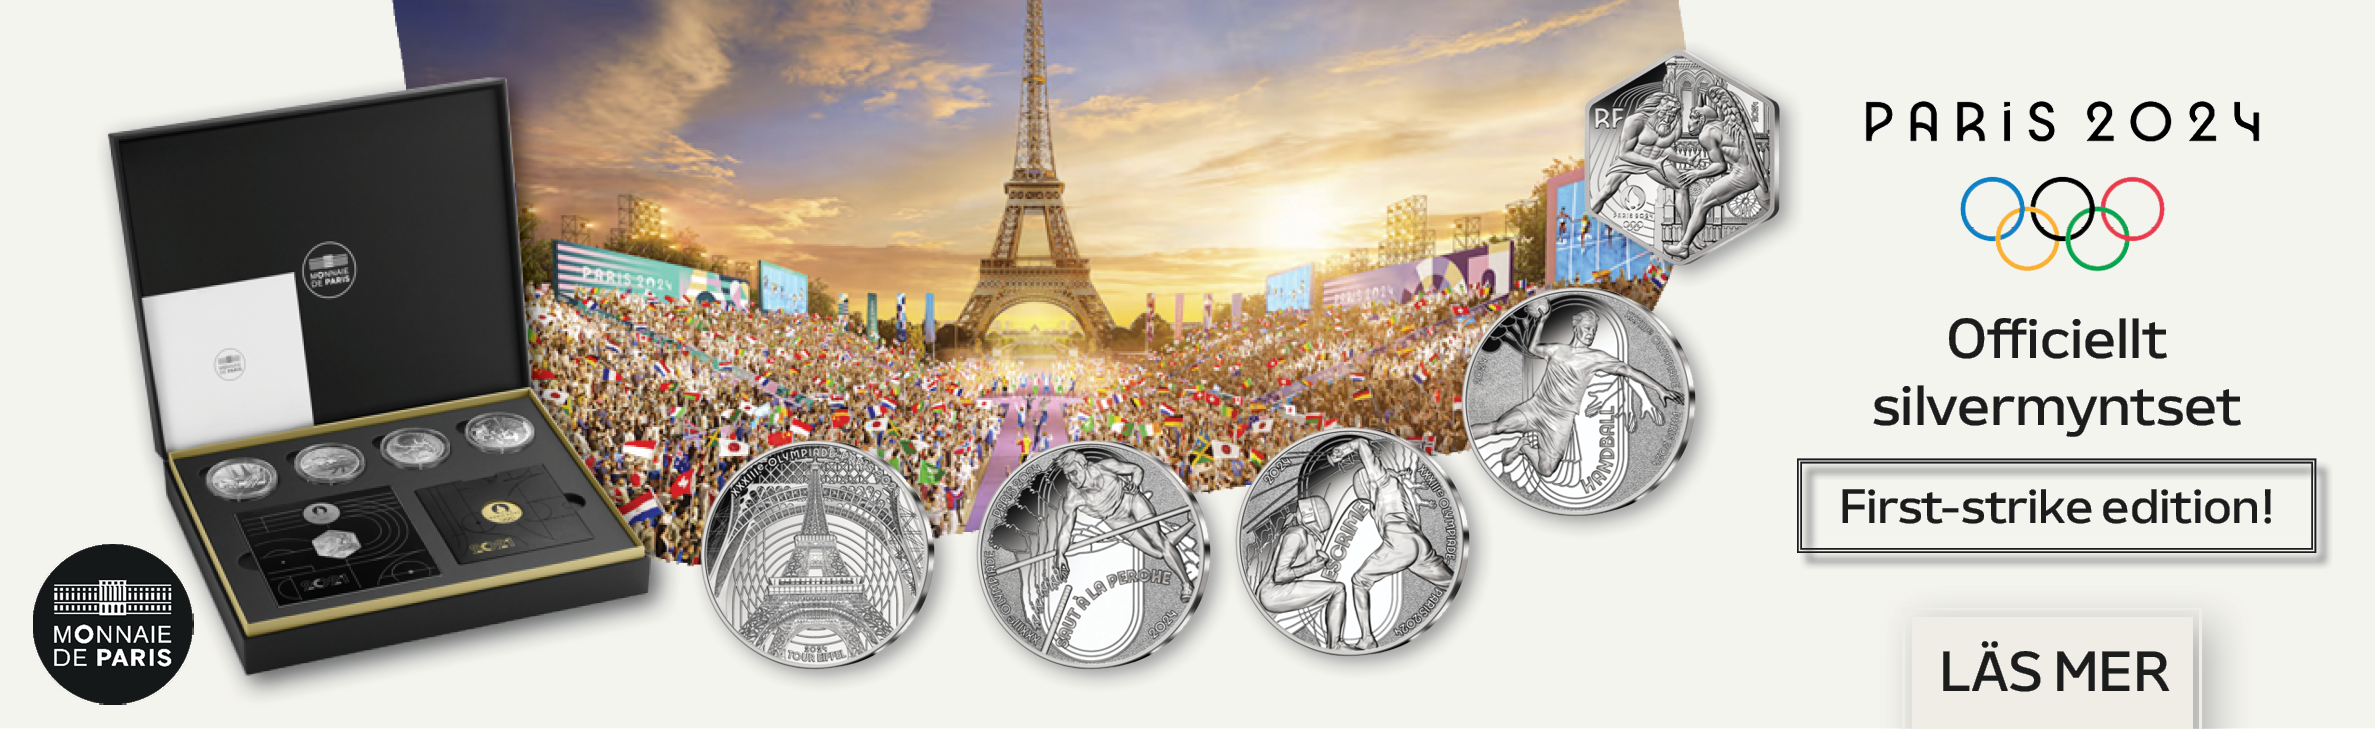 OS Paris 2024 silverset